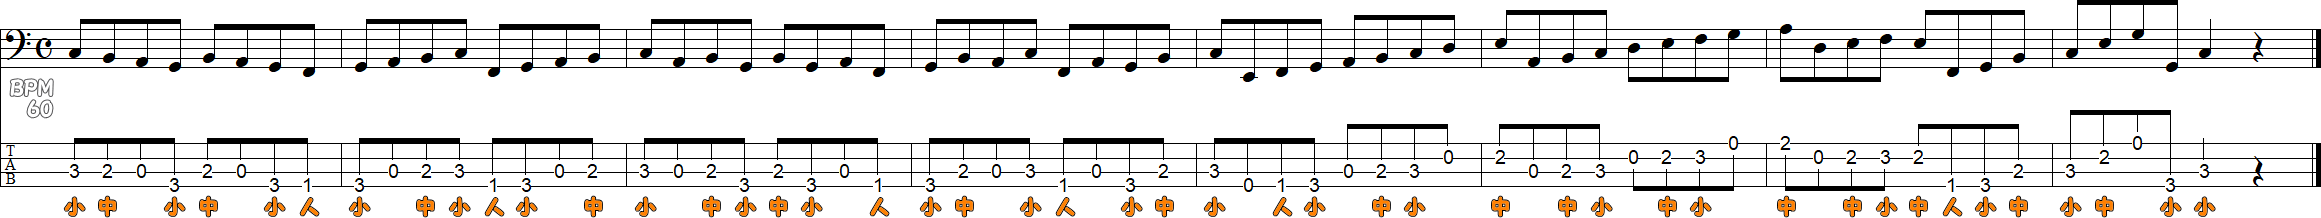 3フレット4フィンガーのスケール練習譜面1